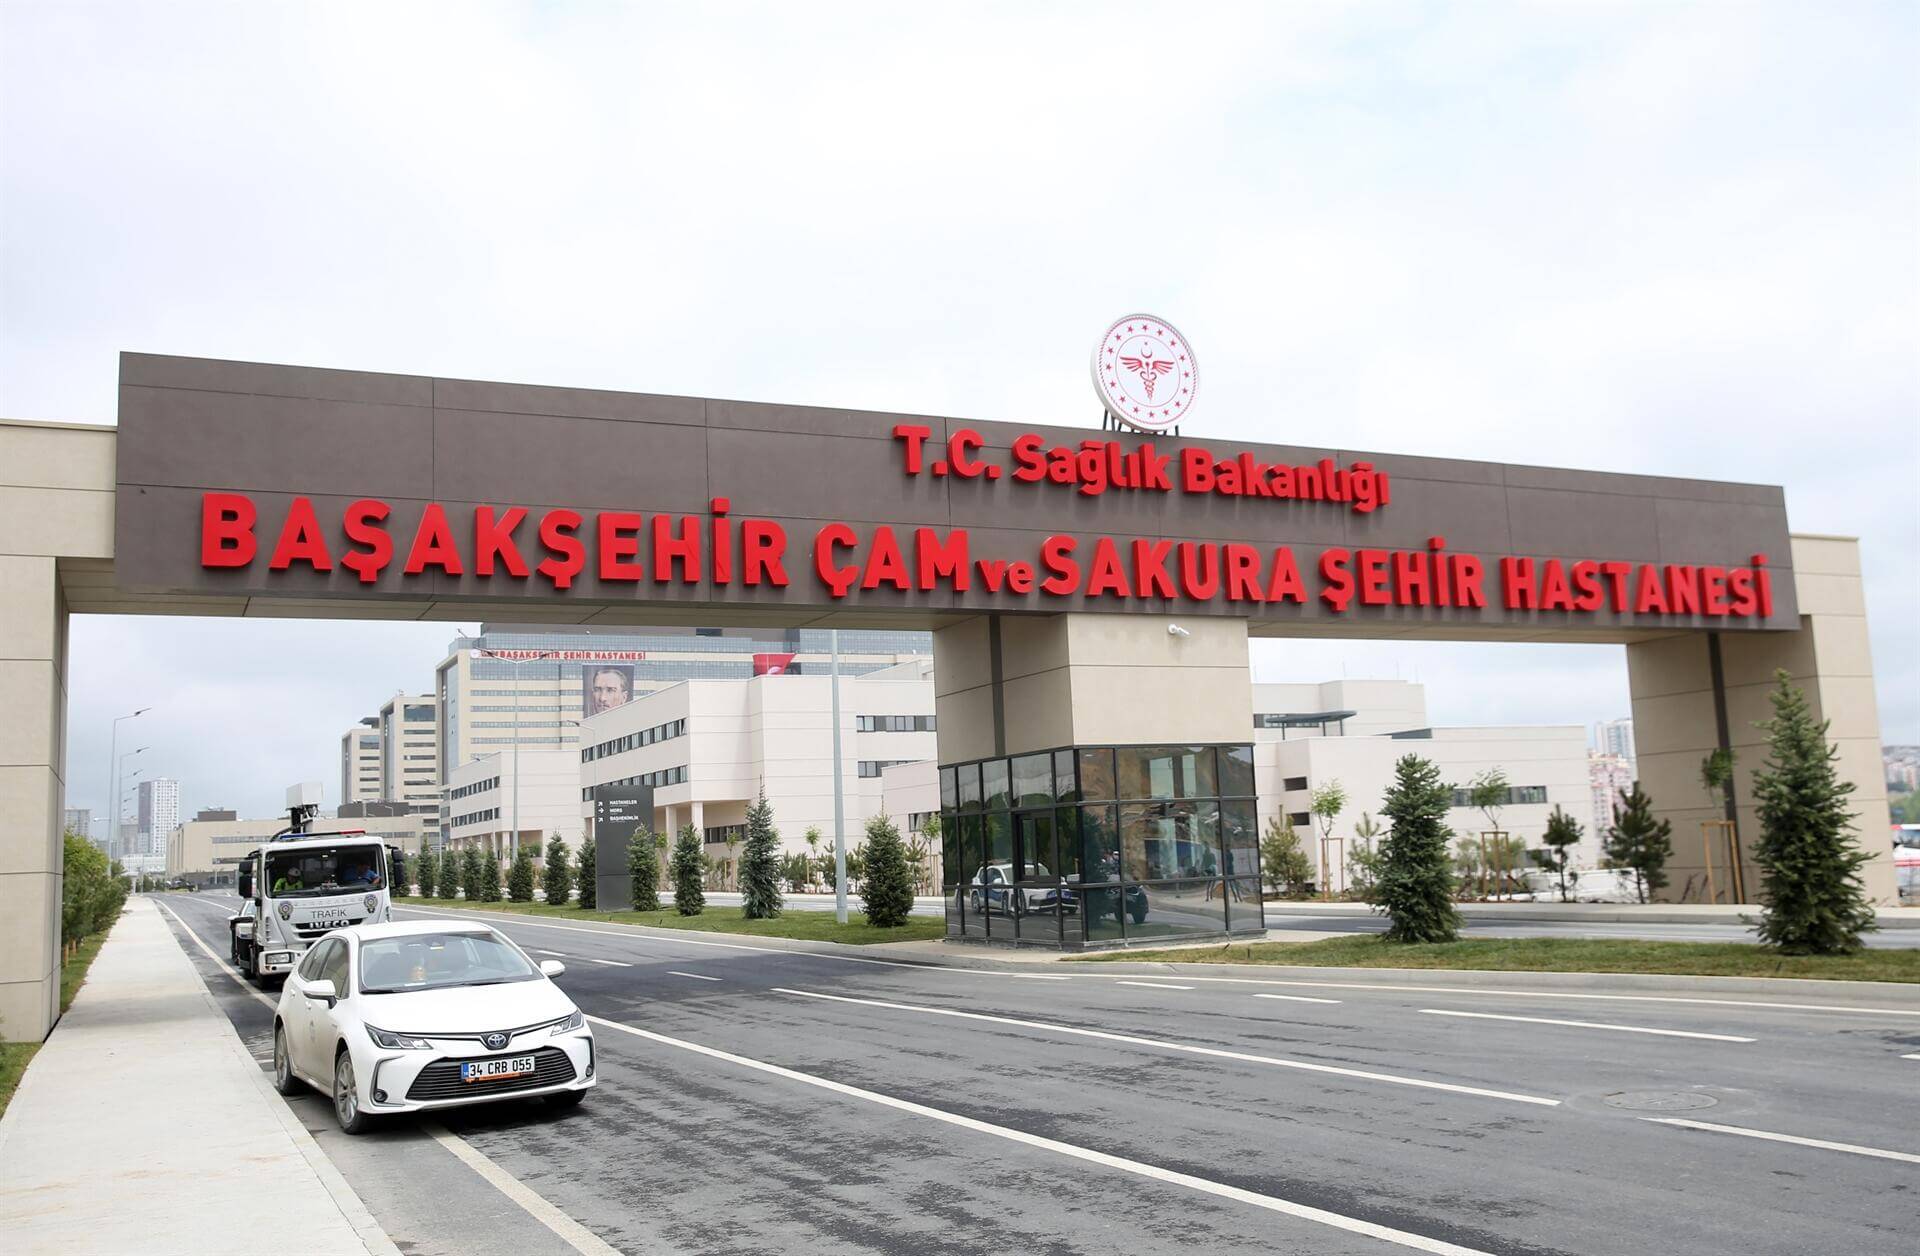 مدينة باشاك شهير الطبية في إسطنبول